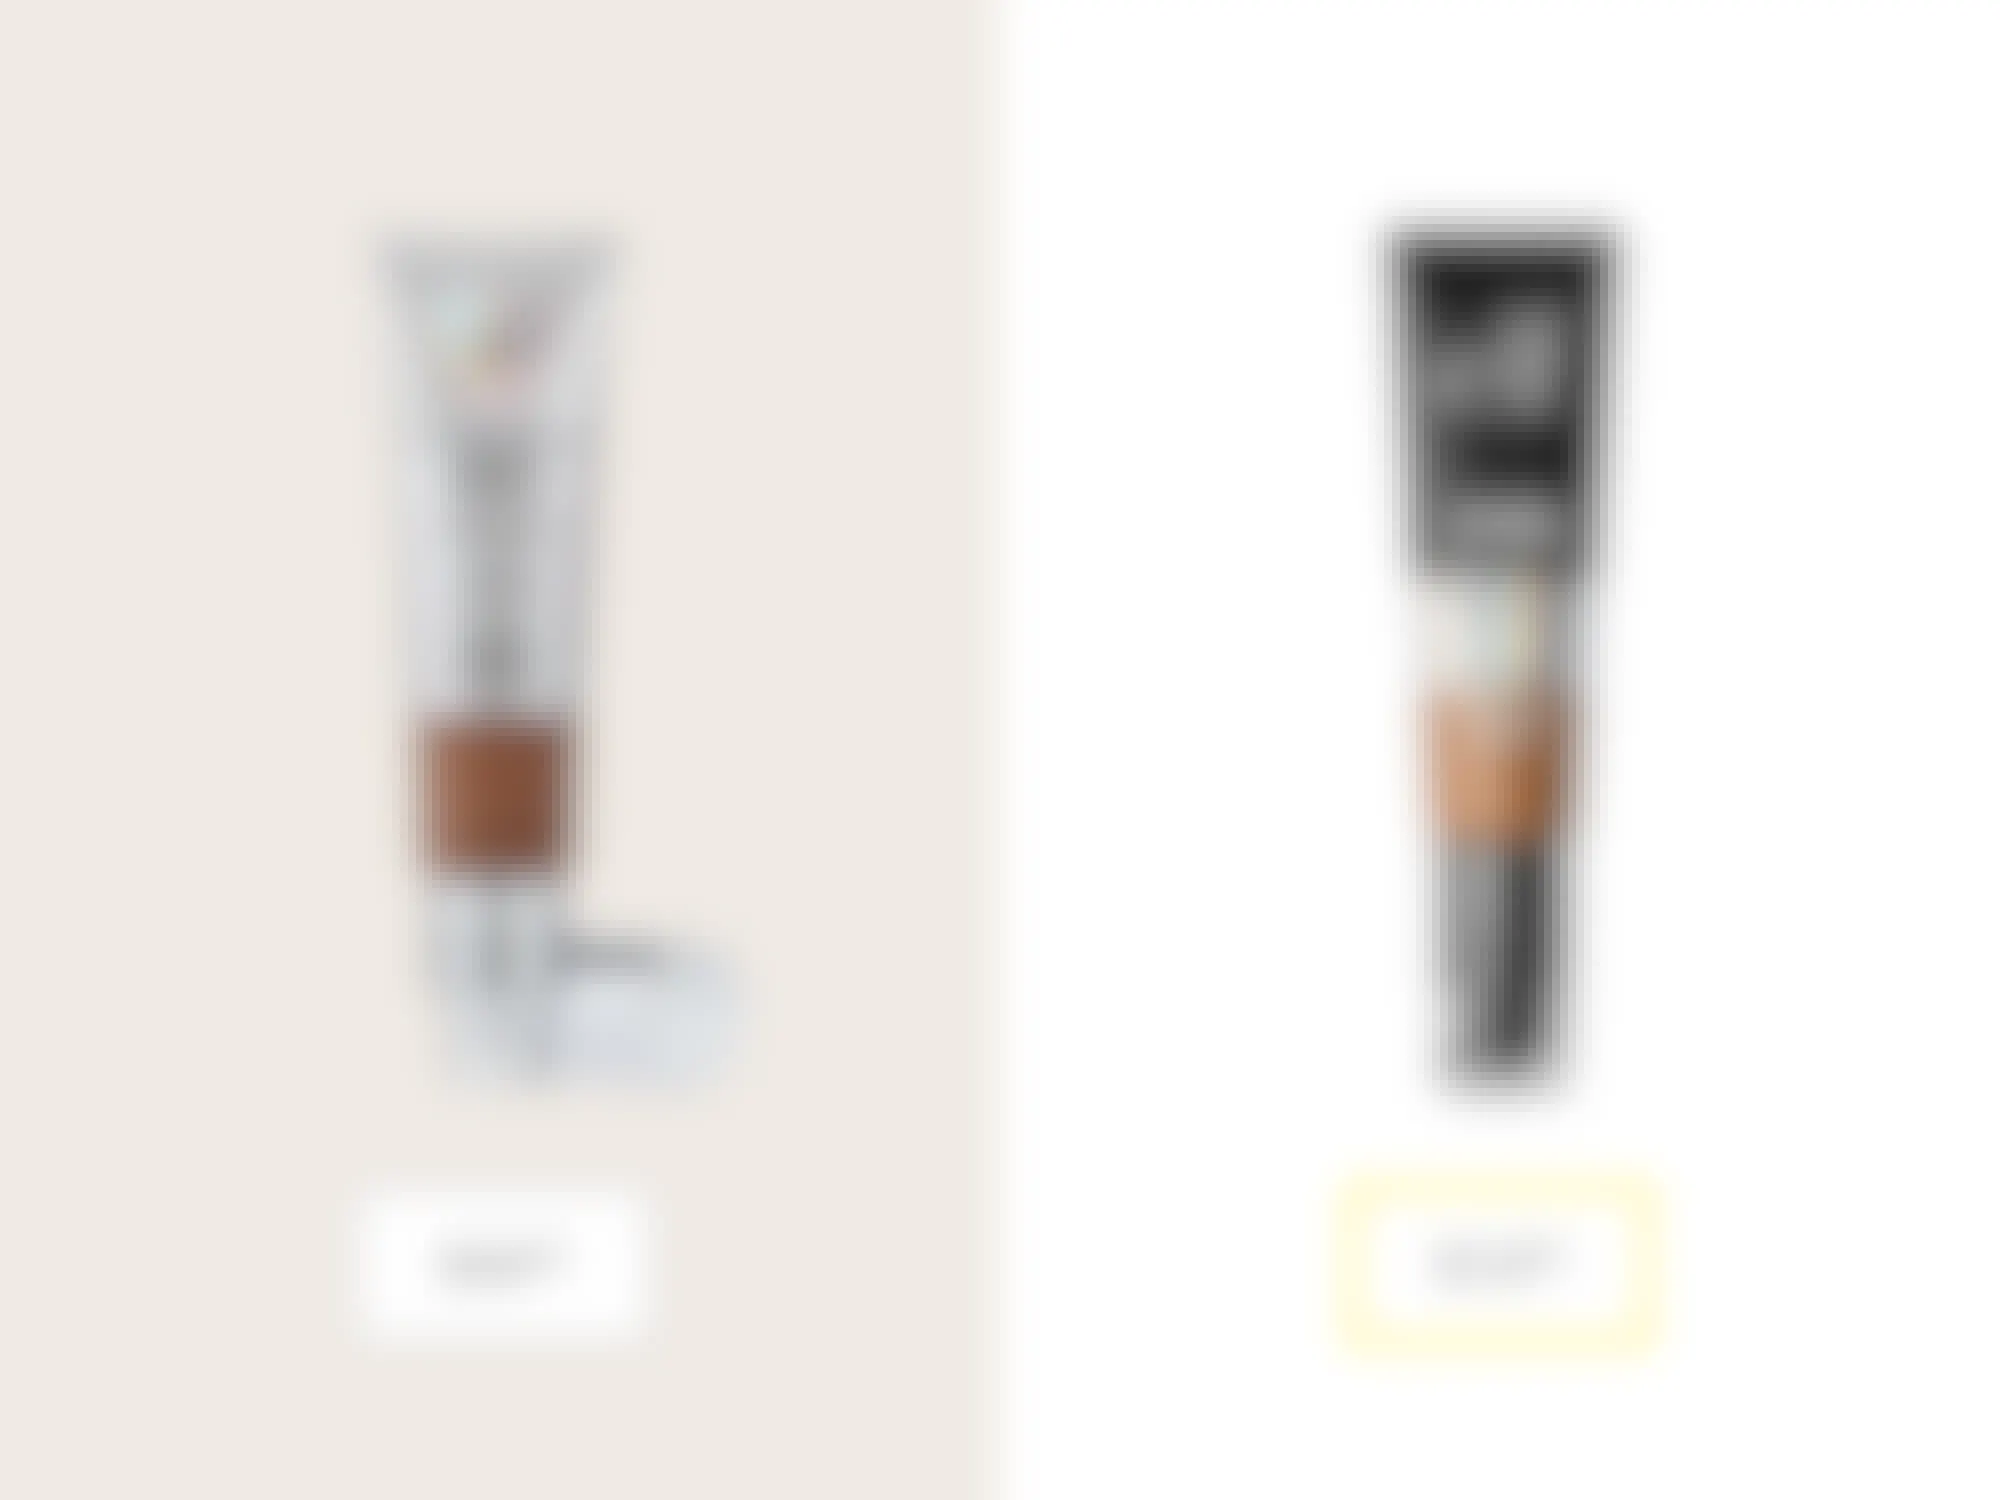 it cosmetics cc plus cream full coverage foundation and e.l.f. camo cc cream price comparison graphic